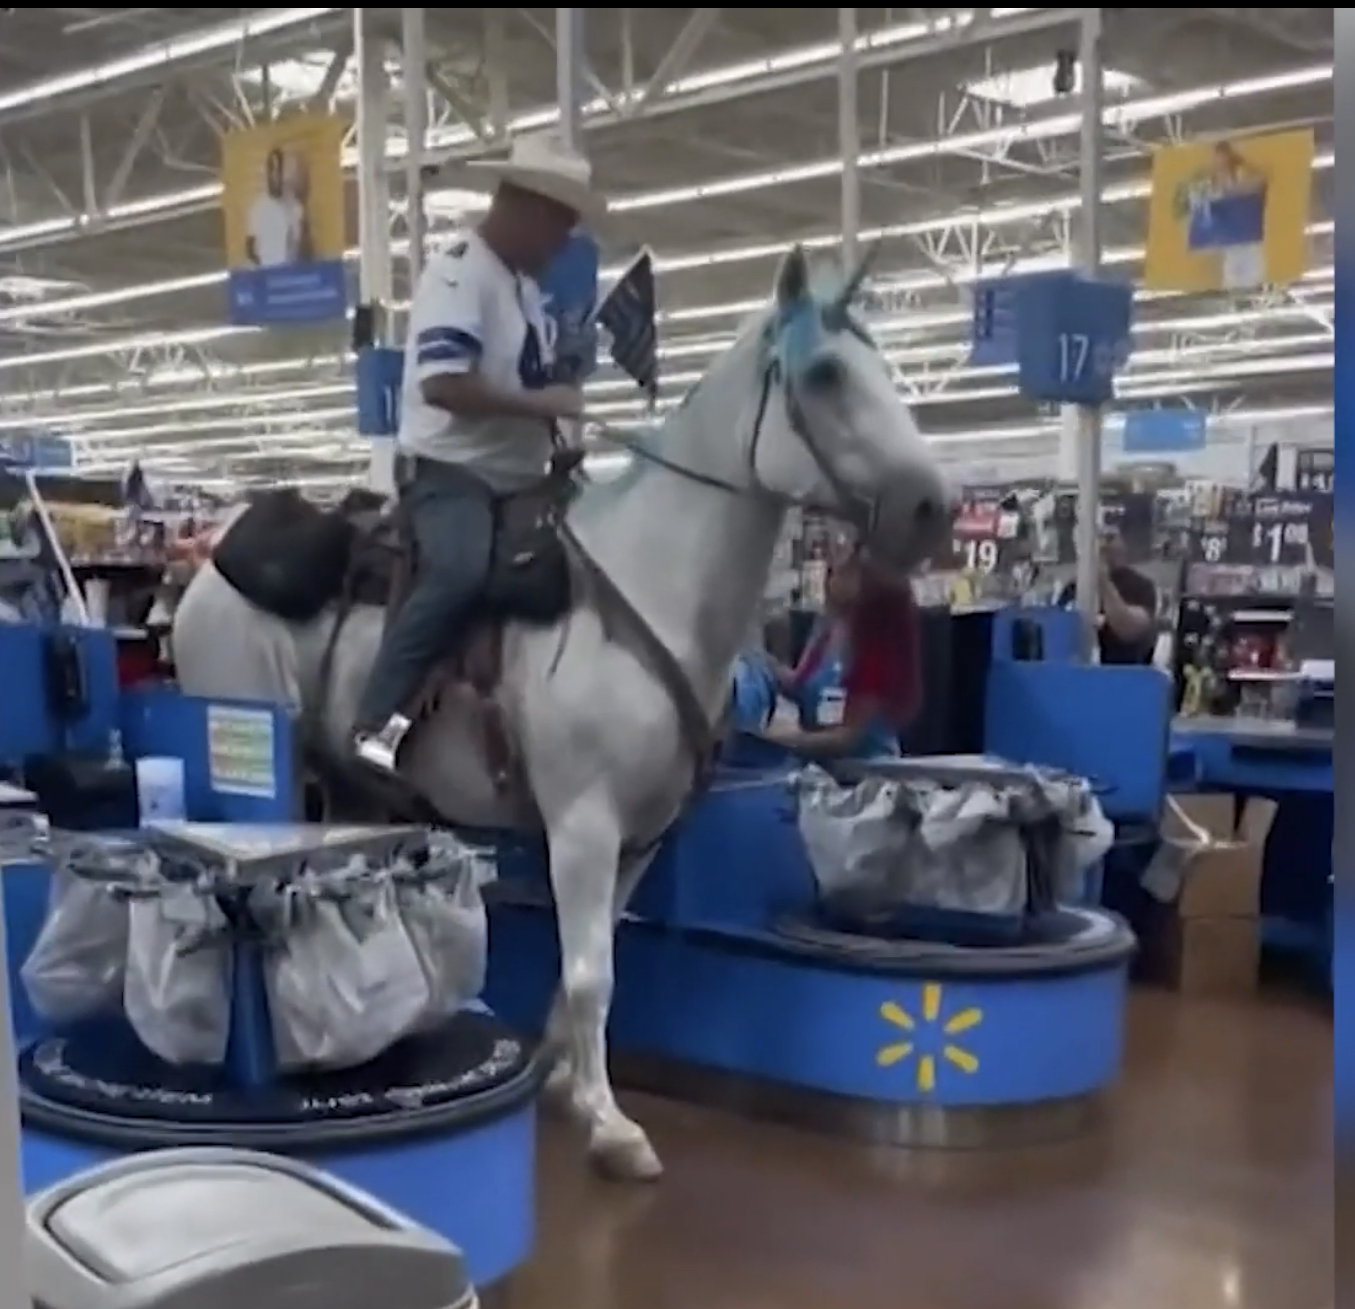 Guy on a unicorn in a Walmart Blank Meme Template